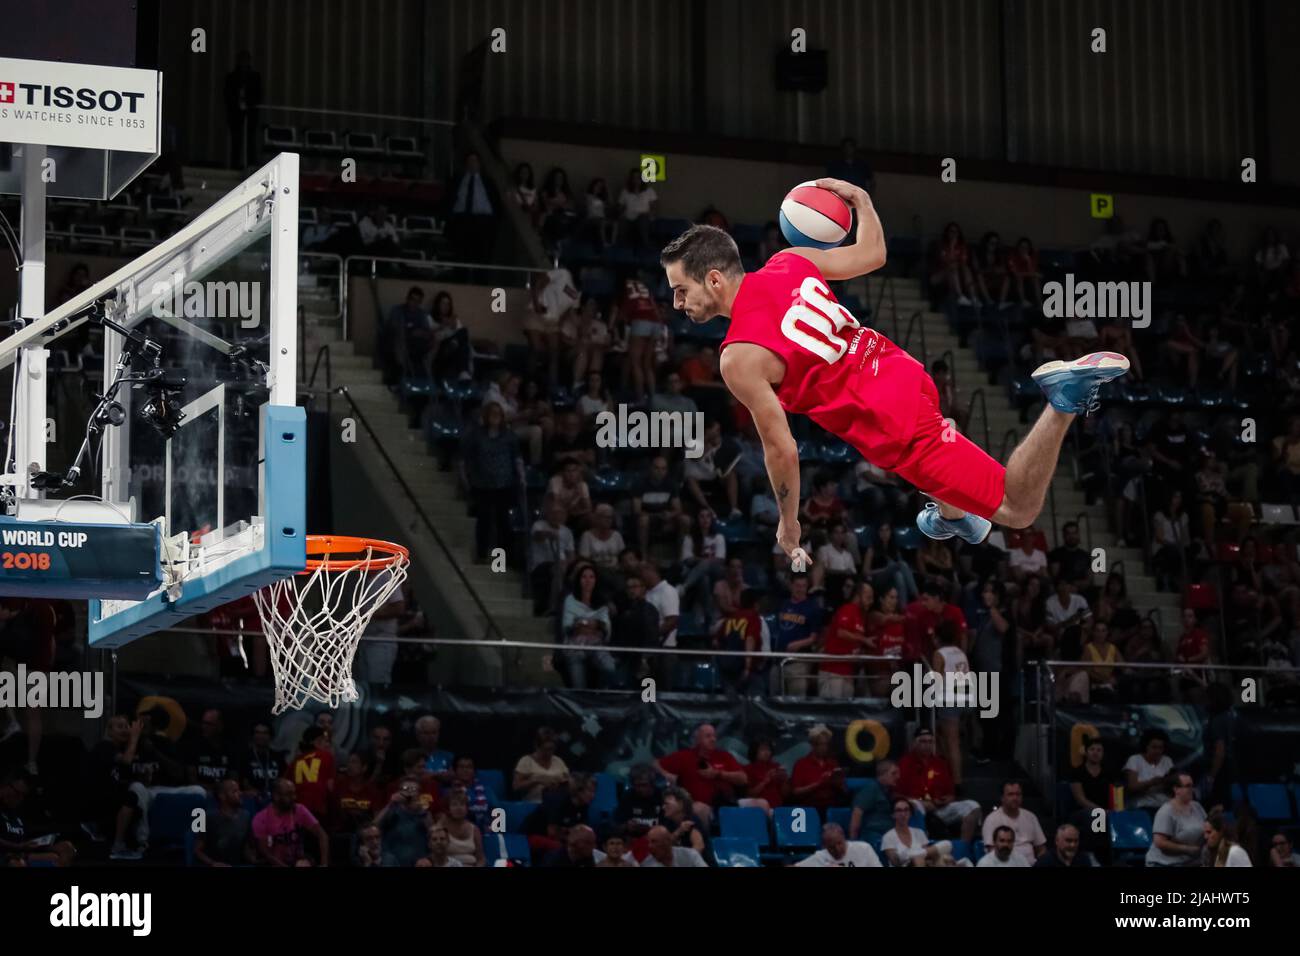 Ténérife, Espagne, 28 septembre 2018: Un joueur de basket-ball saute sur le panier lors d'un spectacle acrobatique de basket-ball Banque D'Images